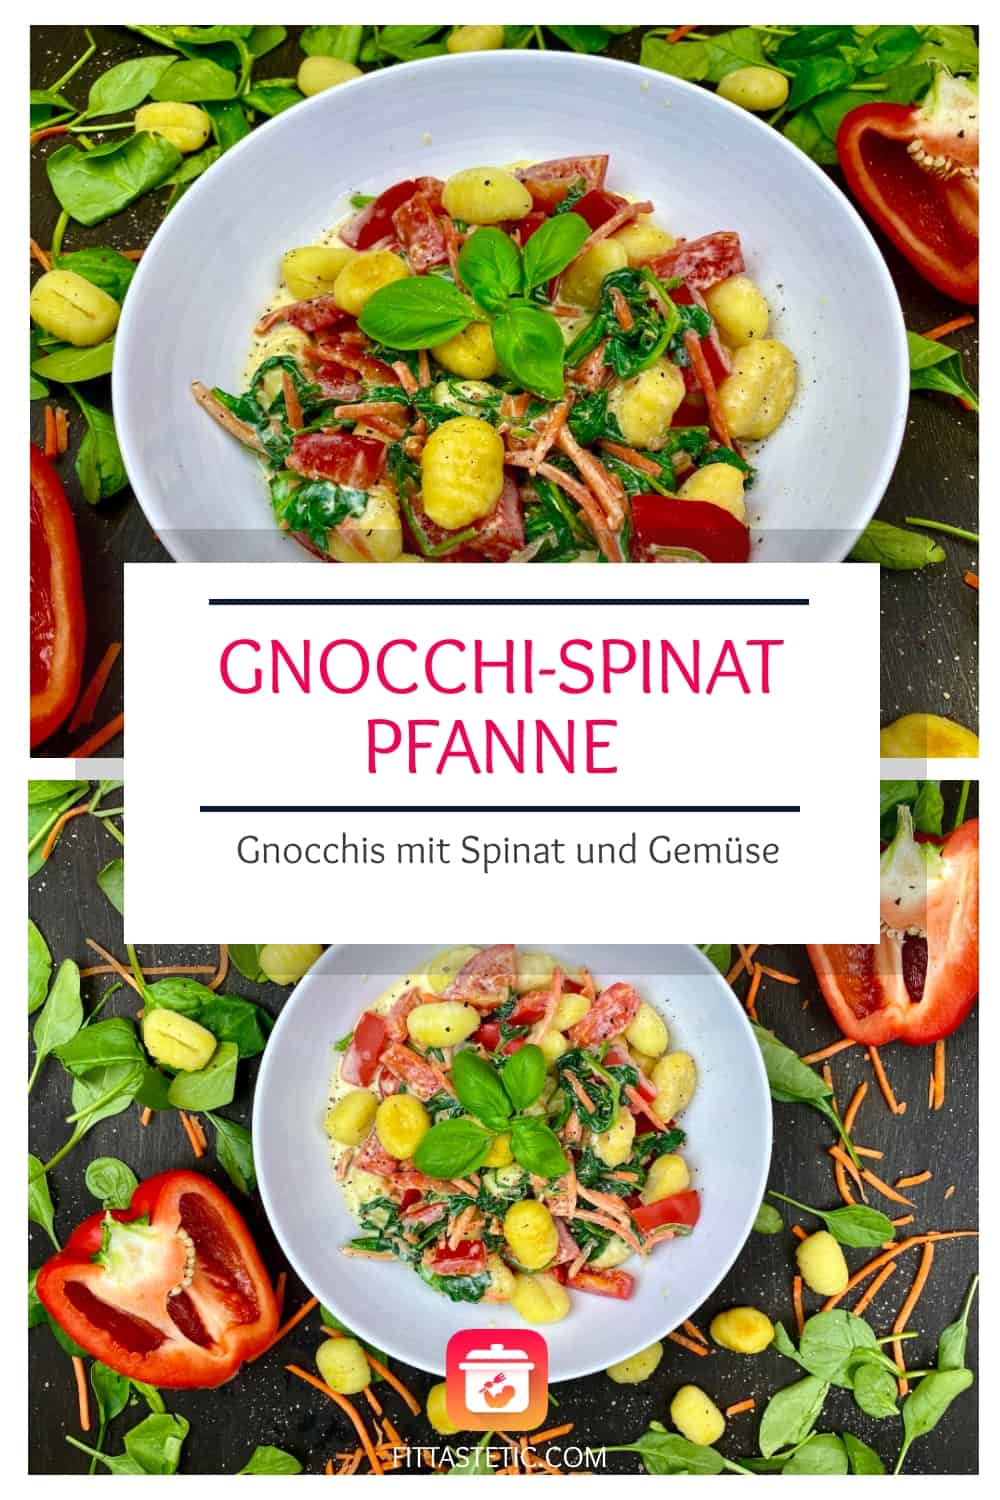 Gesunde Gnocchi-Spinat-Pfanne - Gnocchis mit Spinat und Gemüse